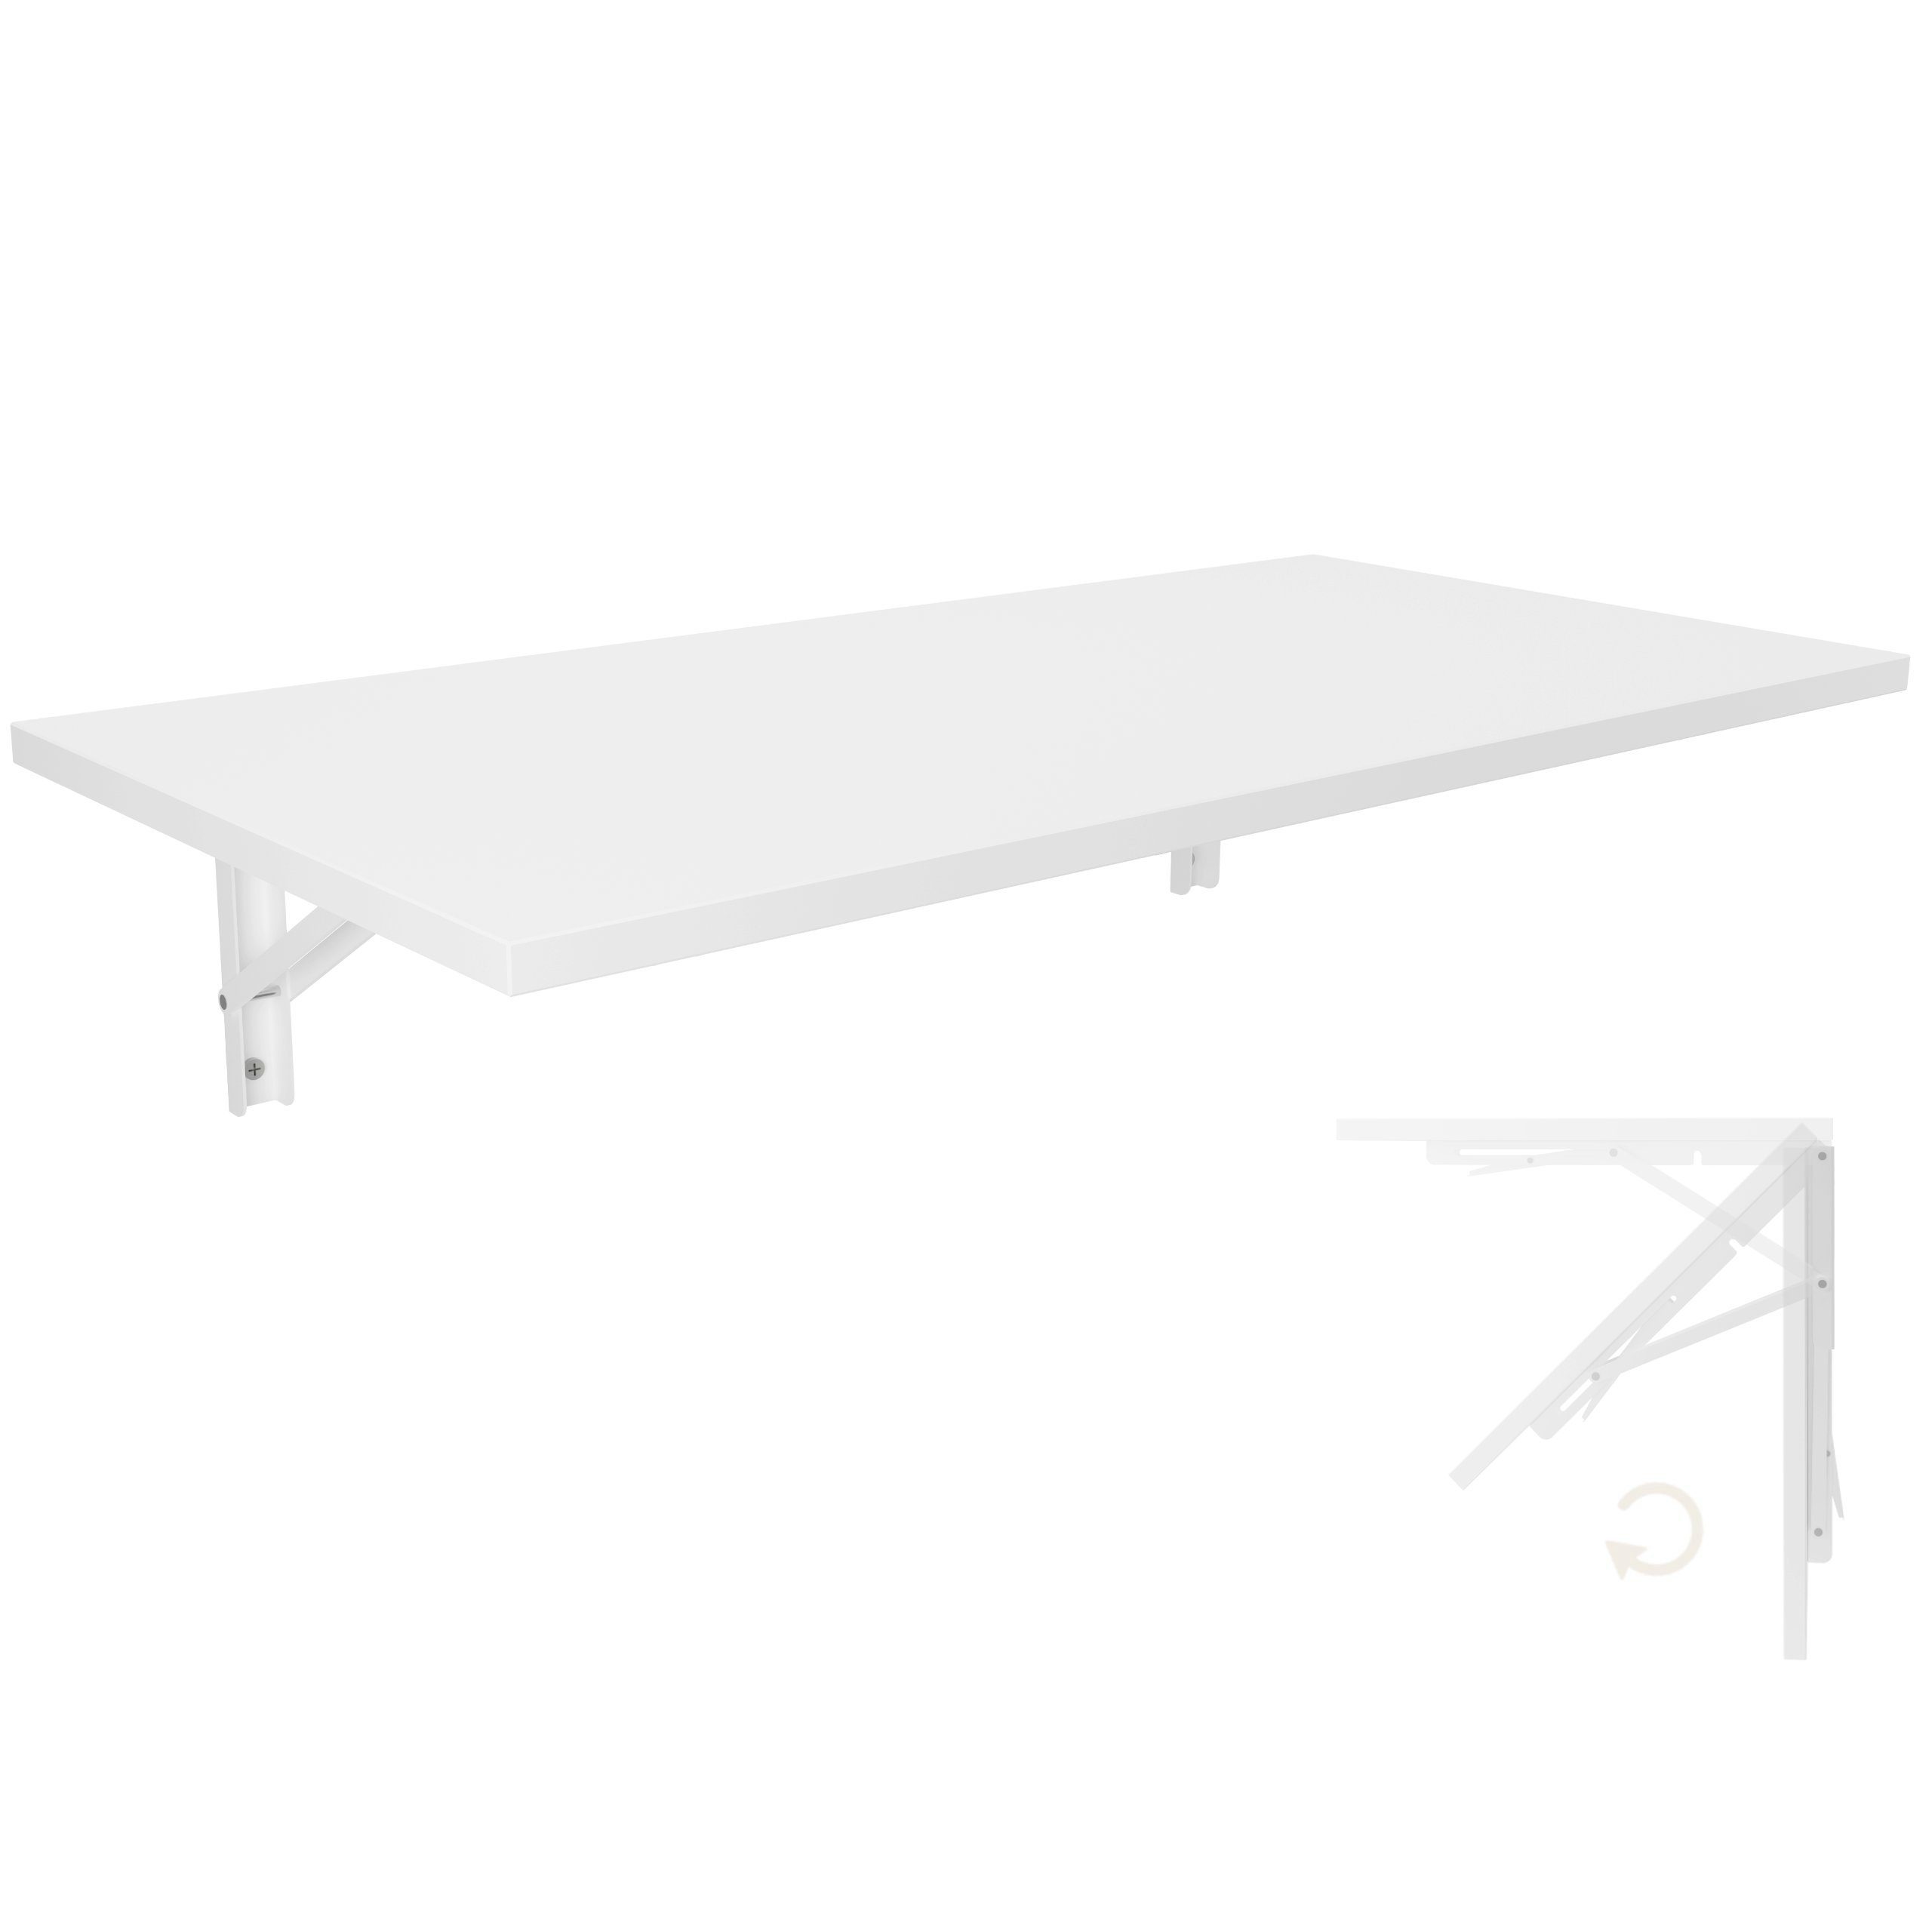 KDR Produktgestaltung Klapptisch »Wandklapptisch Esstisch Küchentisch  Schreibtisch Wand Tisch Klappbar«, Weiß online kaufen | OTTO